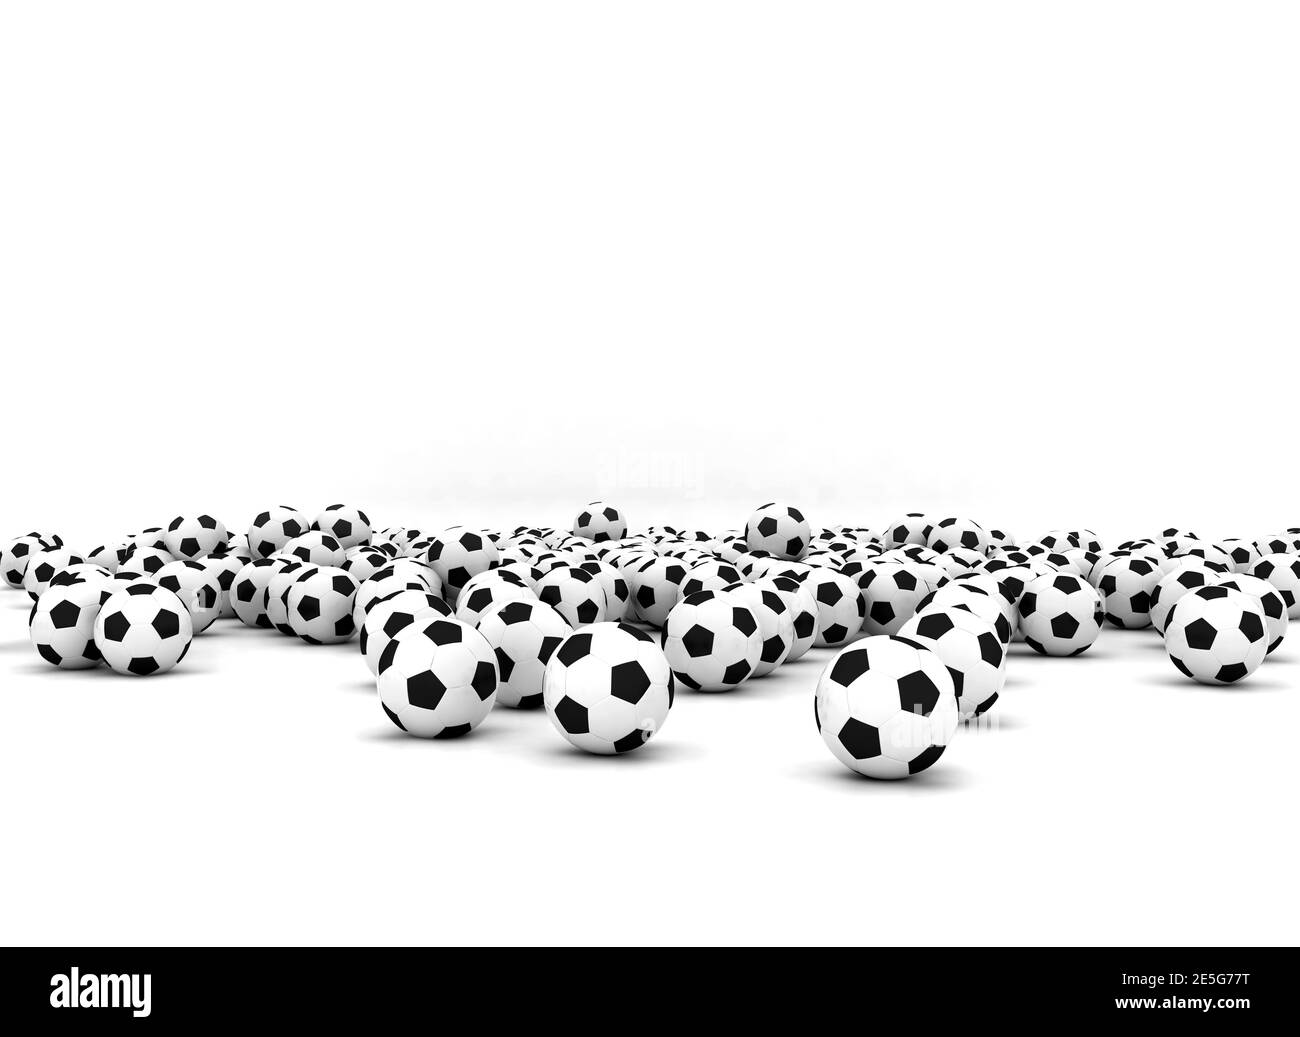 Ballons de football sur fond blanc. Grand groupe de ballons de football noir et blanc Banque D'Images